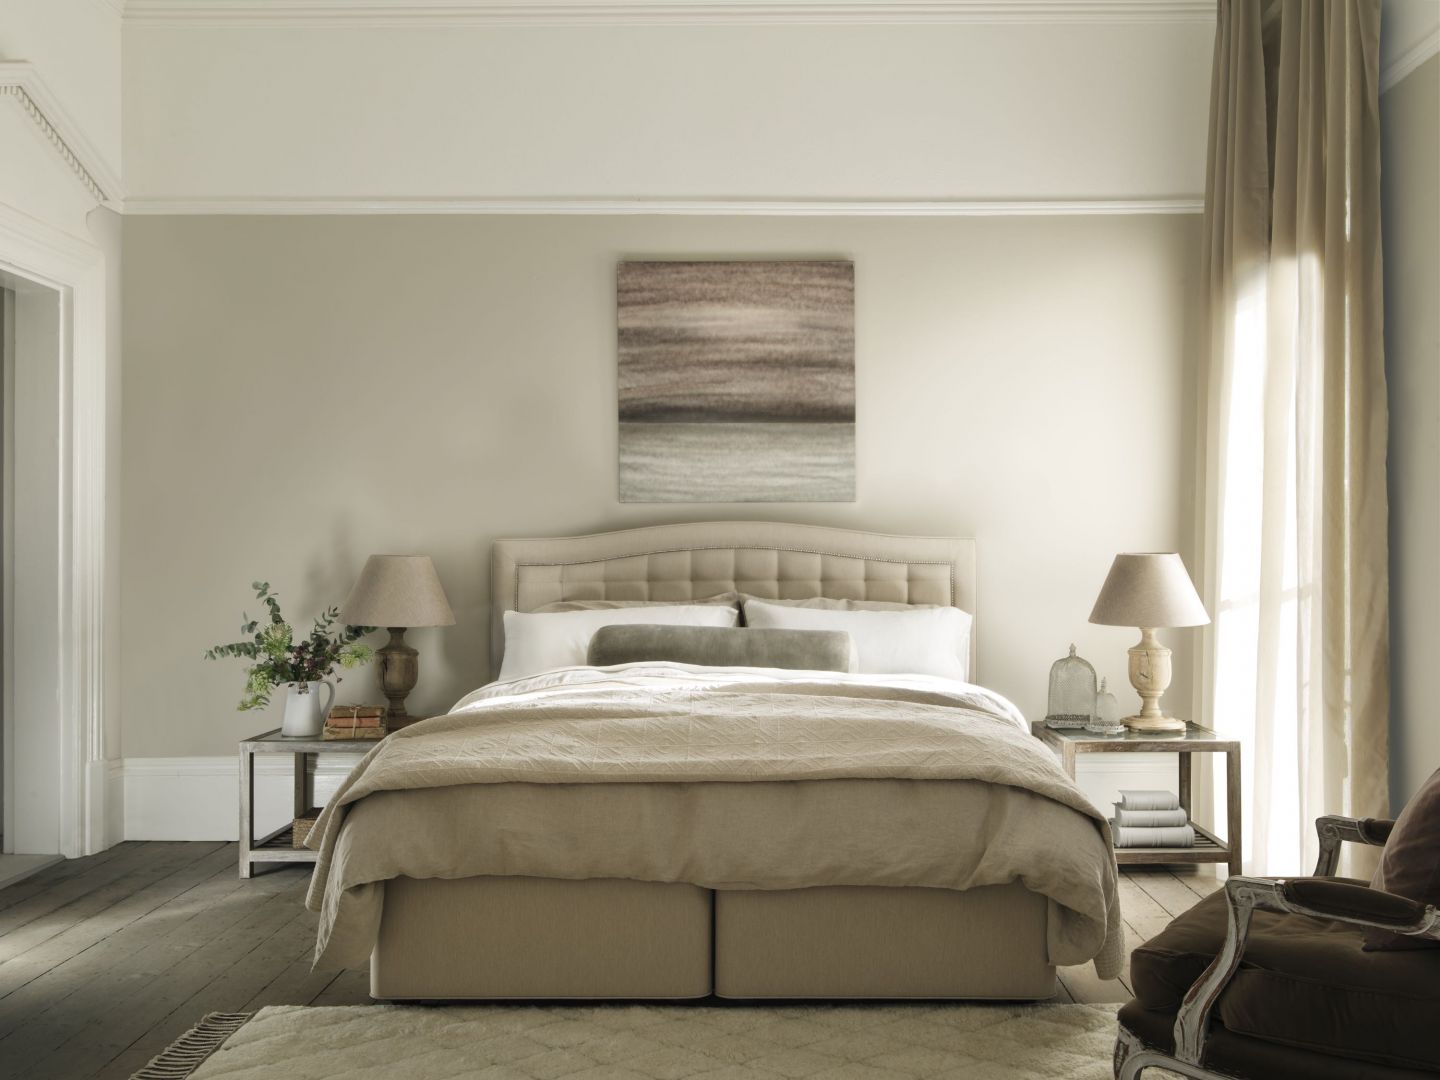 Sypialnia w beżowej kolorystyce zawsze będzie prezentować się kusząco i niezwykle elegancko. Fot. Hypnos Beds